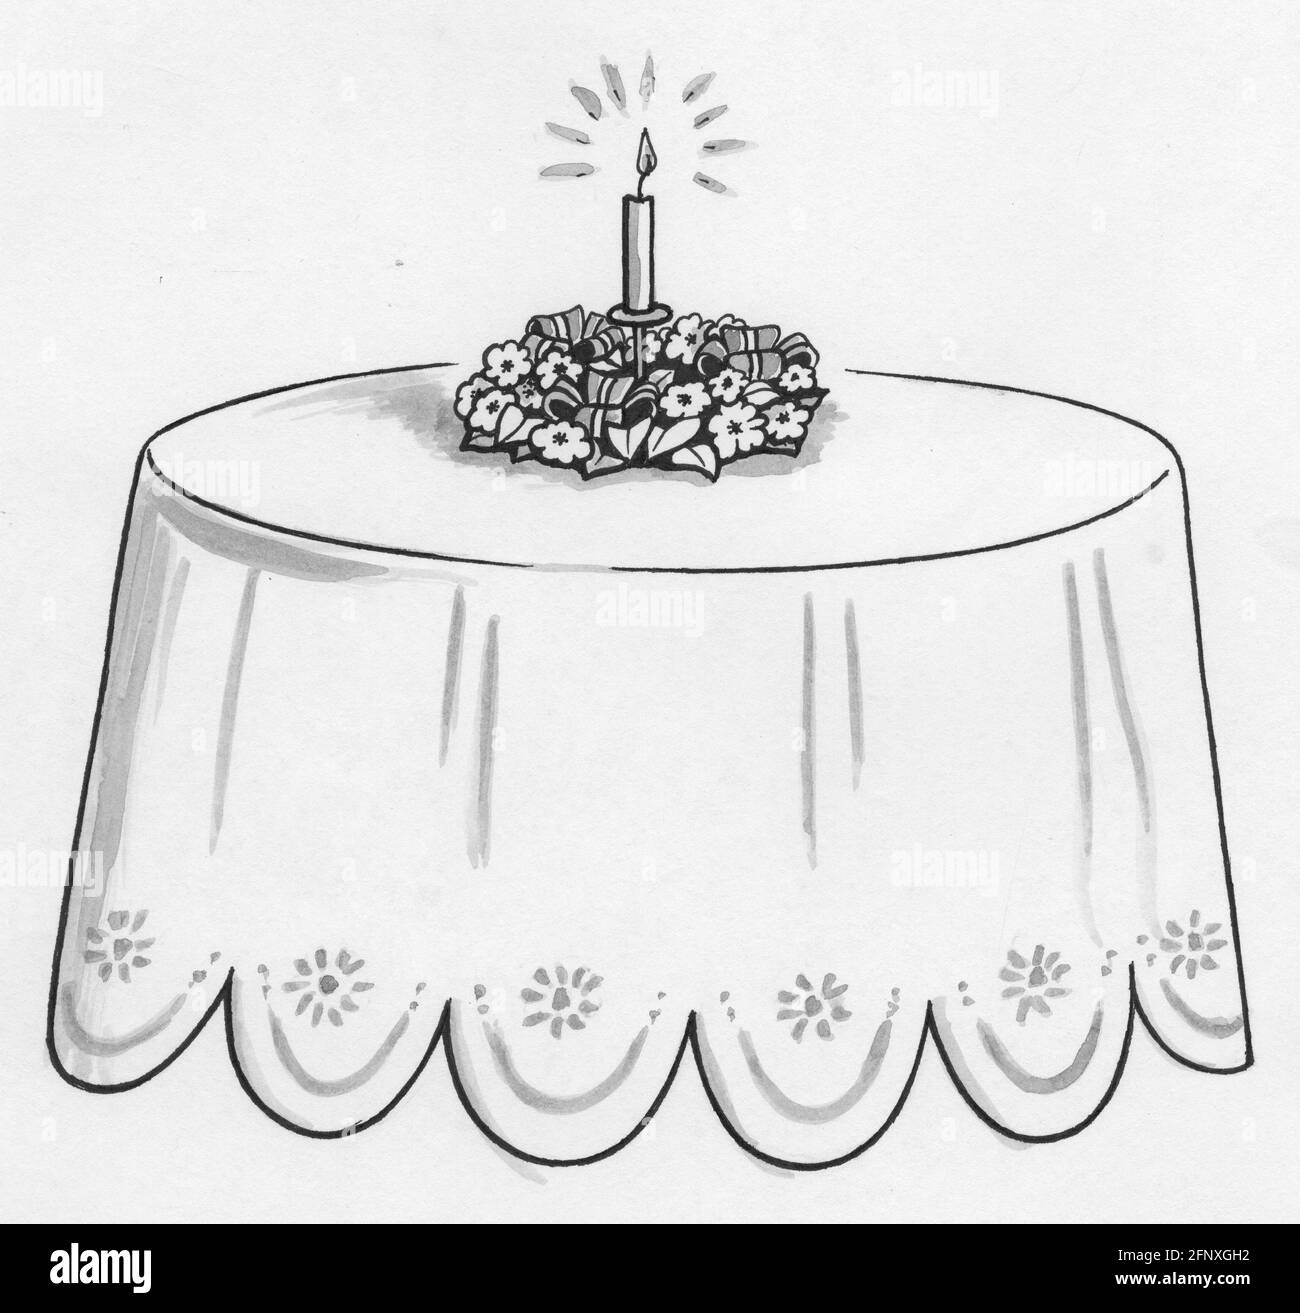 Dessin d'une table ronde avec une fleur pièce maîtresse et bougie Banque D'Images